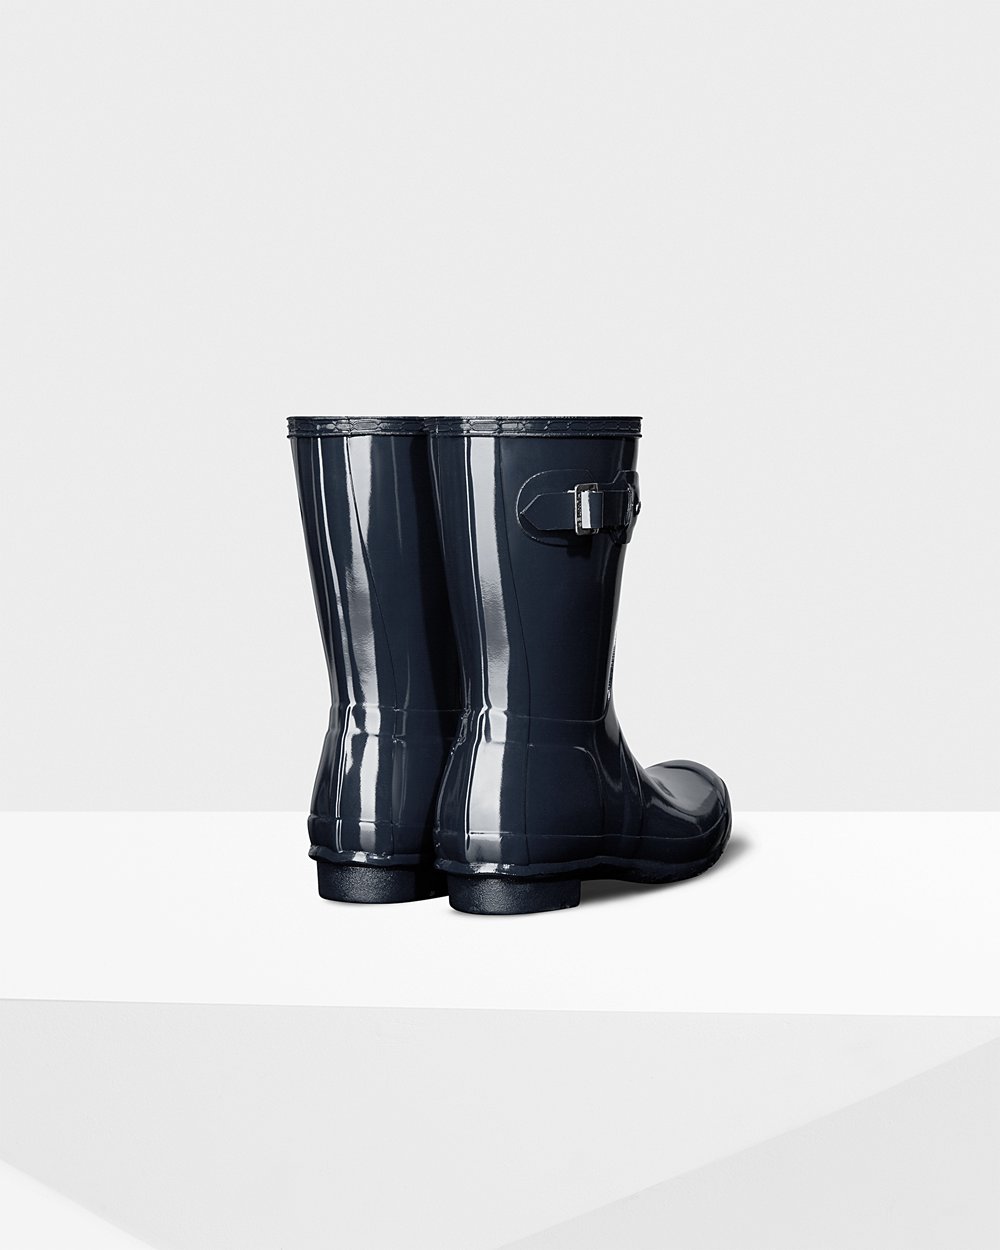 Womens Short Rain Boots - Hunter Original Gloss (08PNVHZEA) - Navy